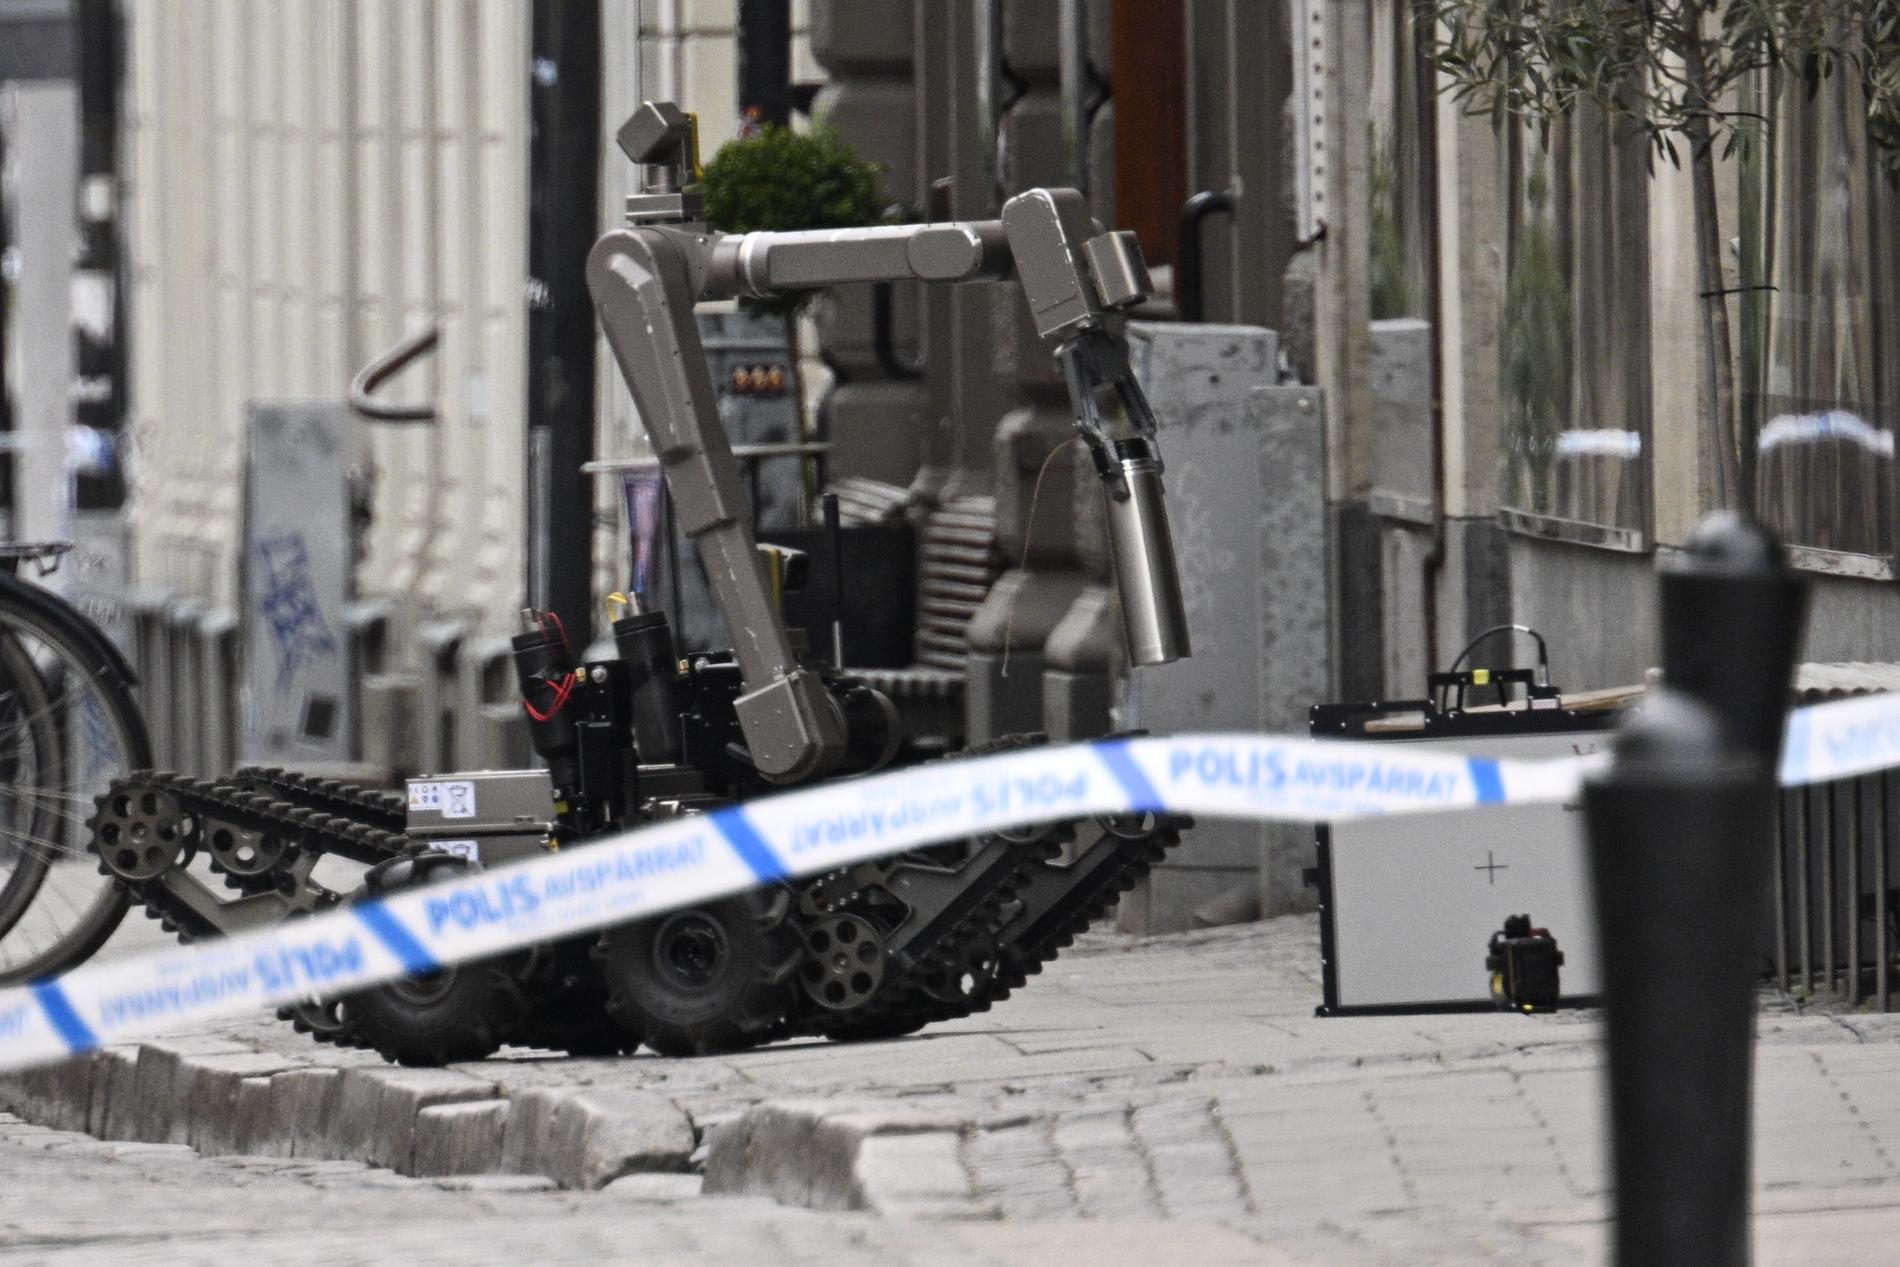 Polis och avspärrningar på Klostergatan i centrala Lund efter att ett misstänkt farligt föremål påträffats på måndagen.